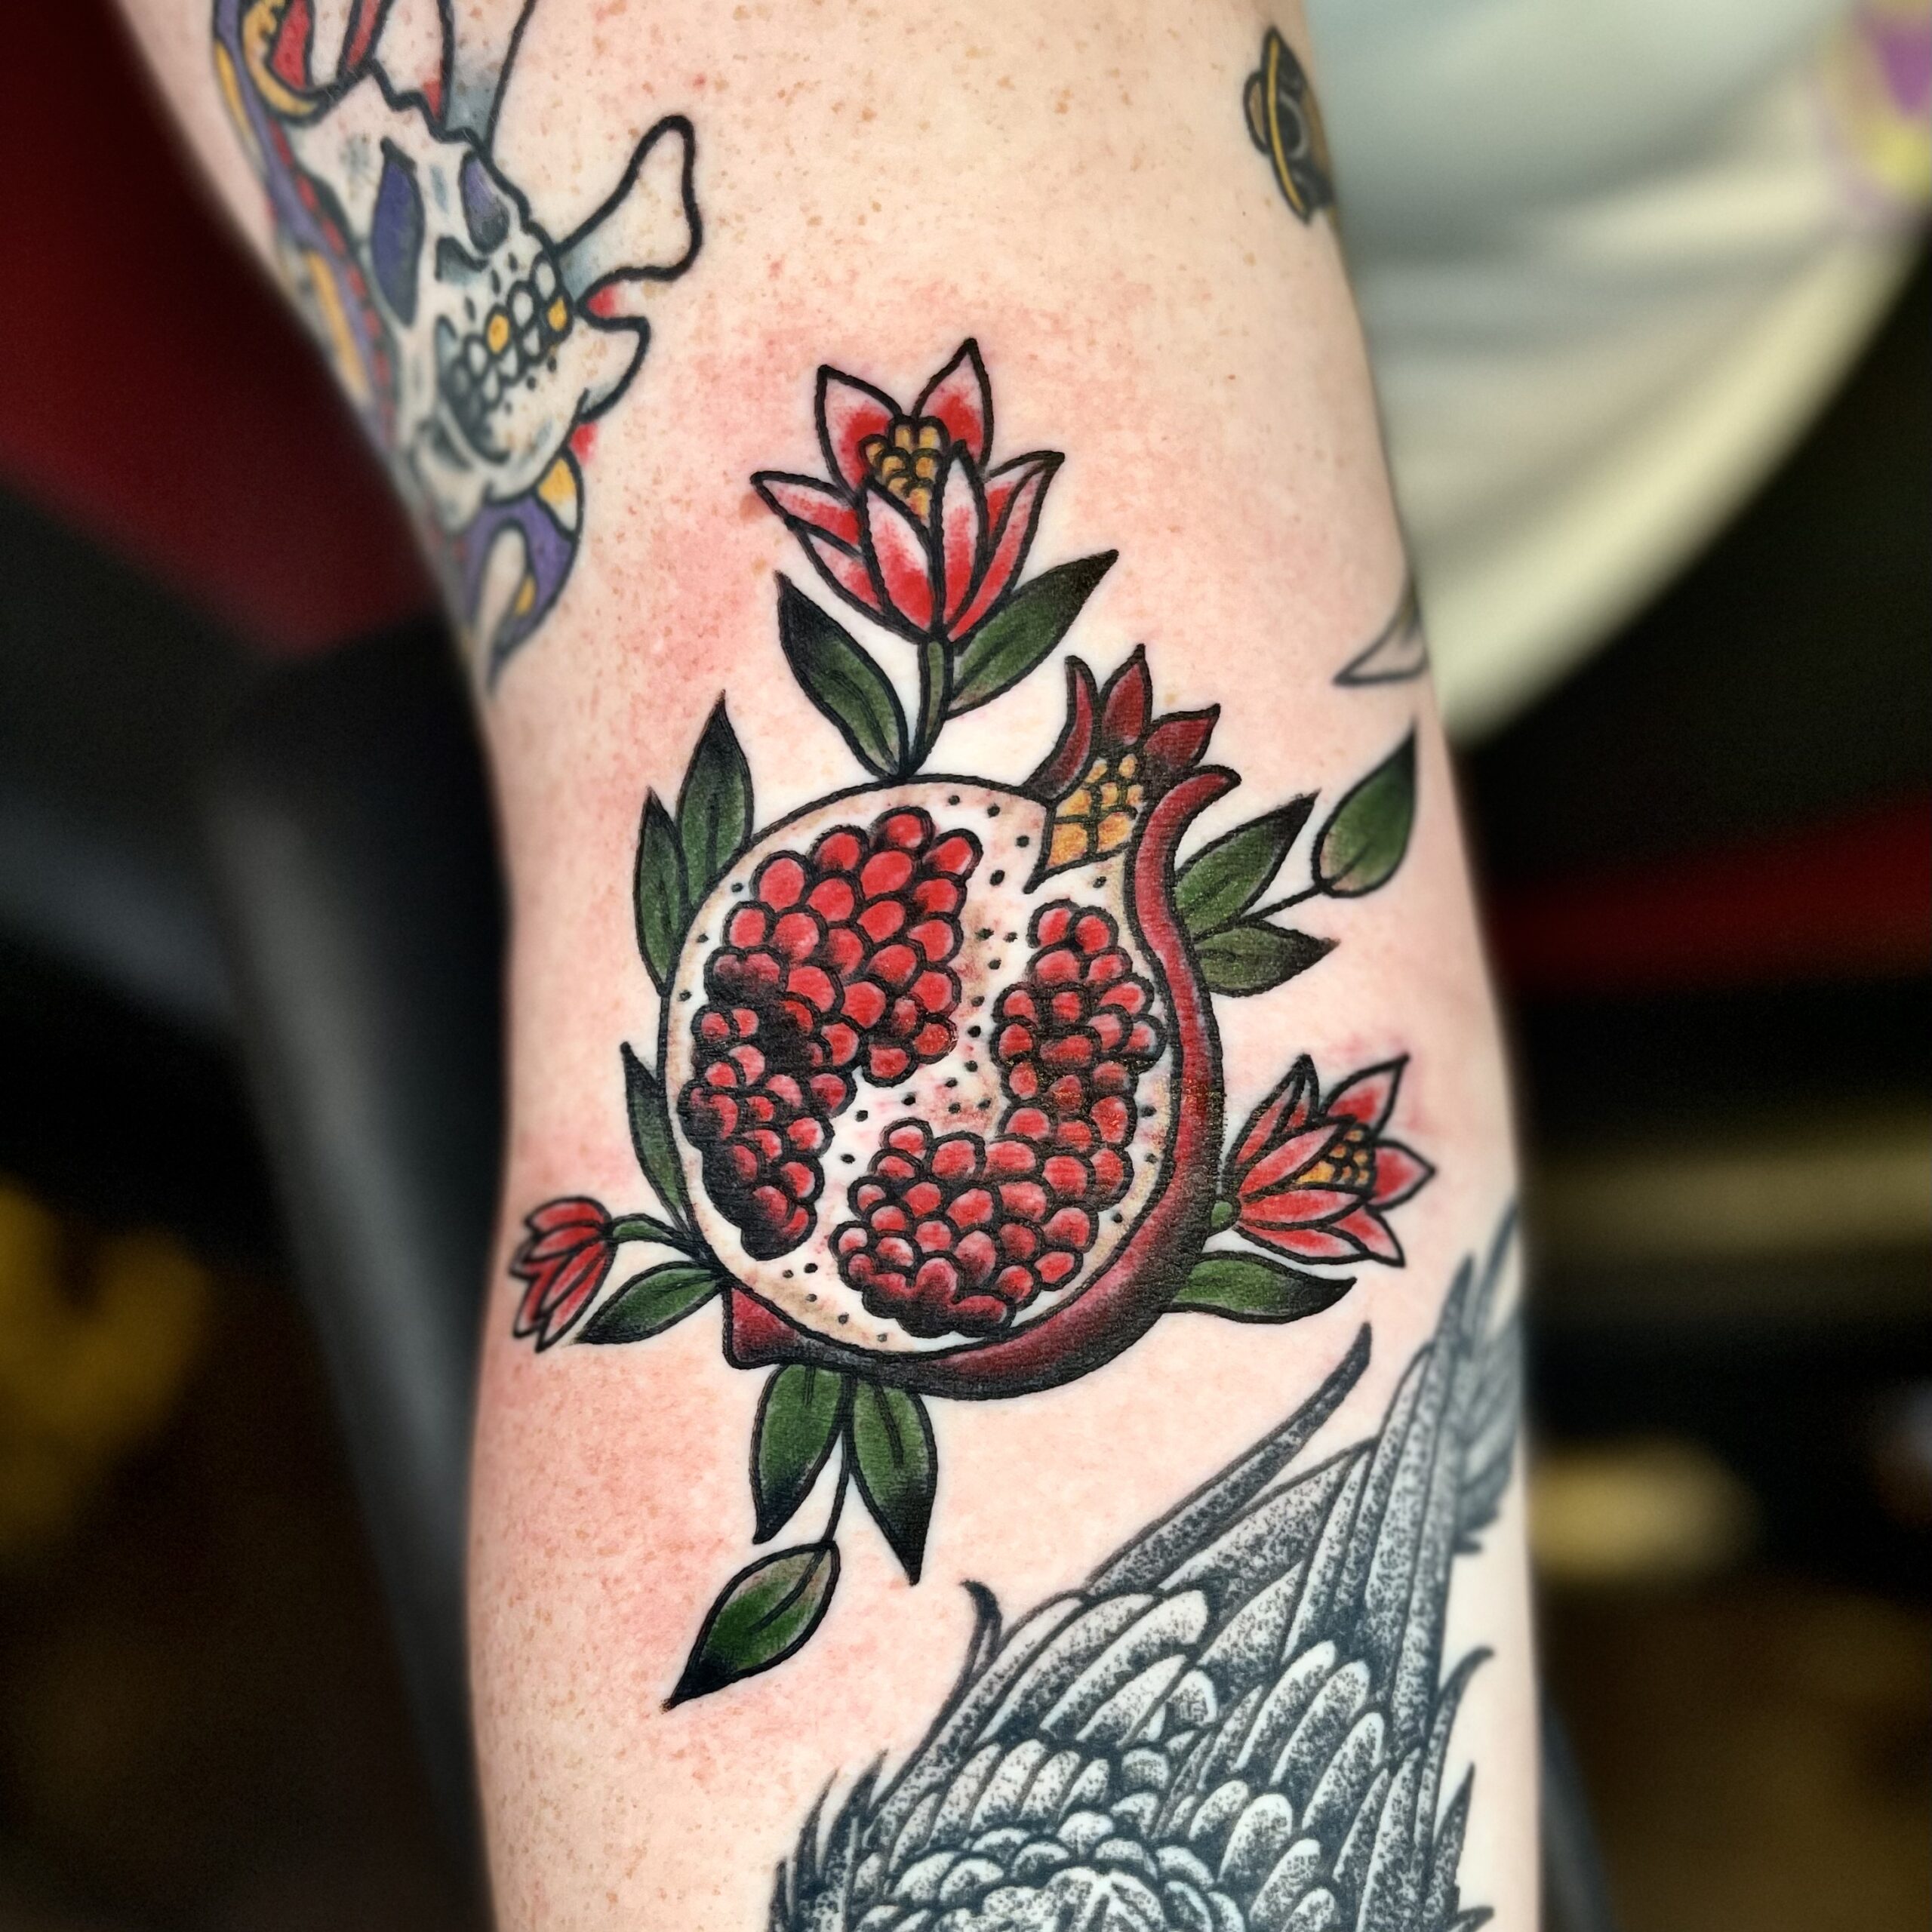 Tattoo of a pomegranate from Dallas tattoo artist